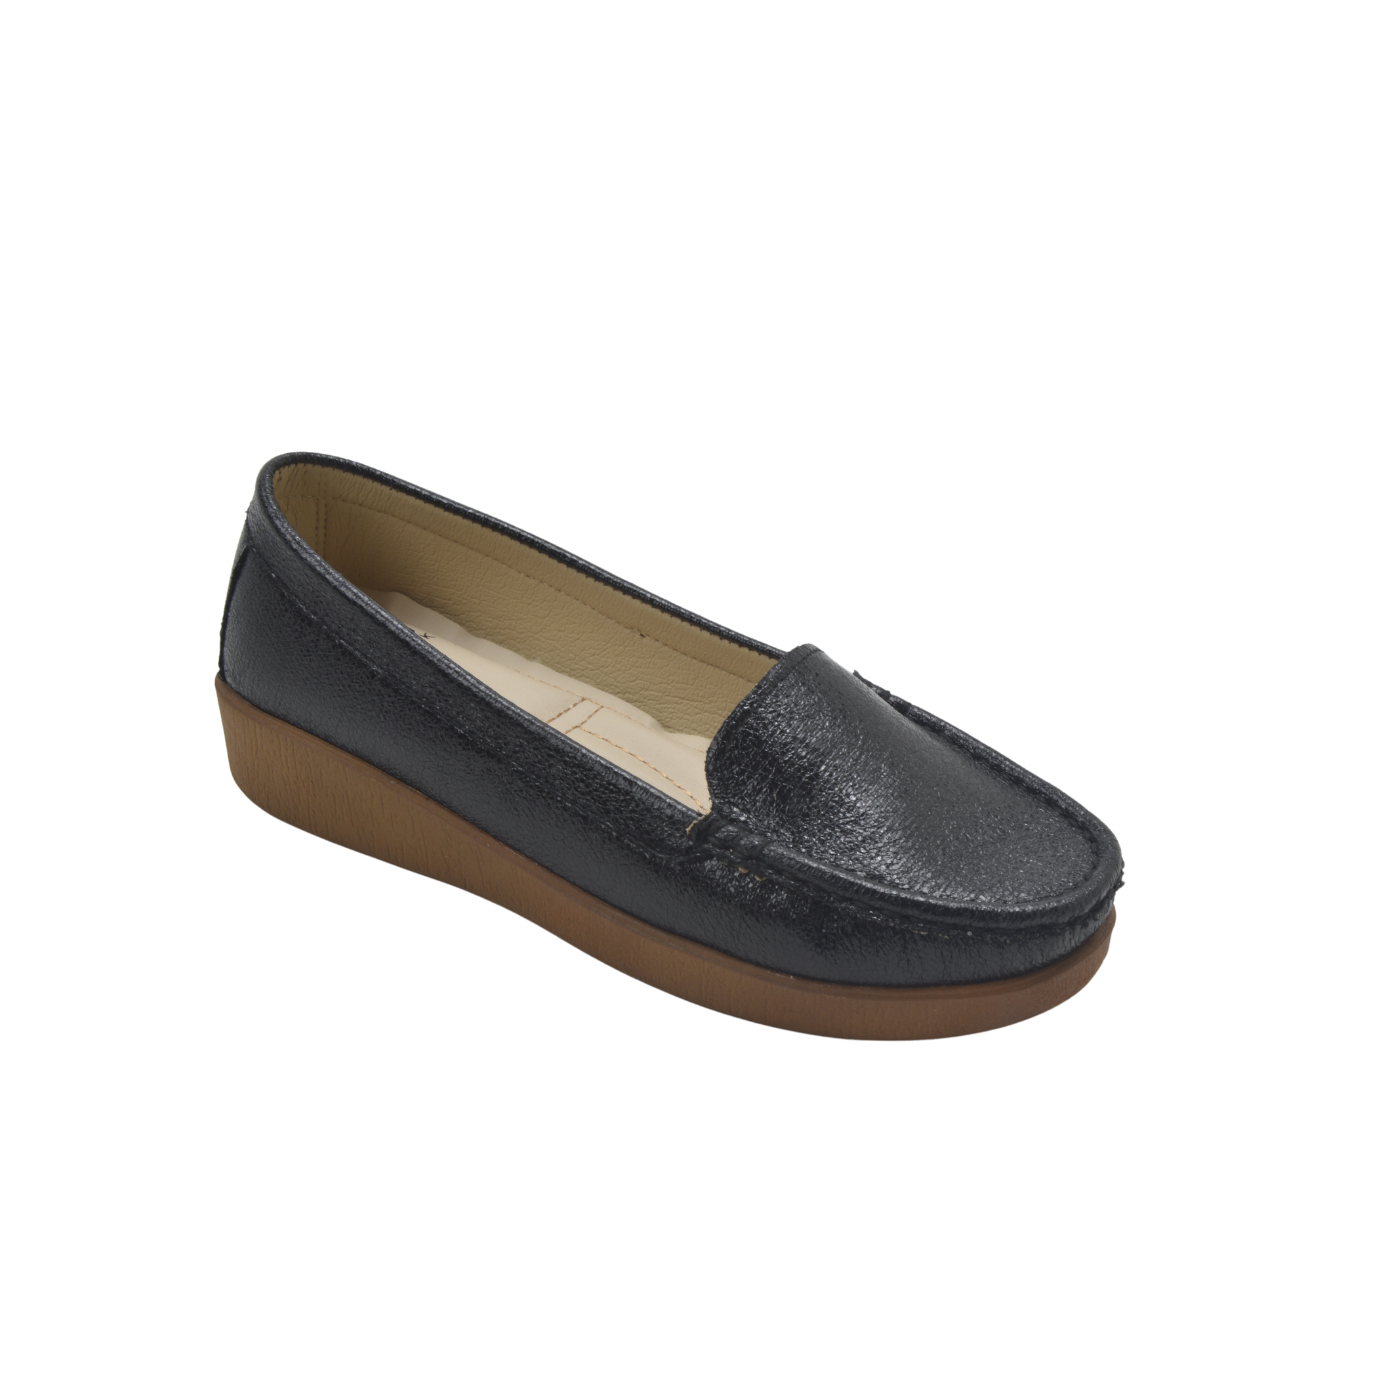 Black Leather Basic Slip On Shoe